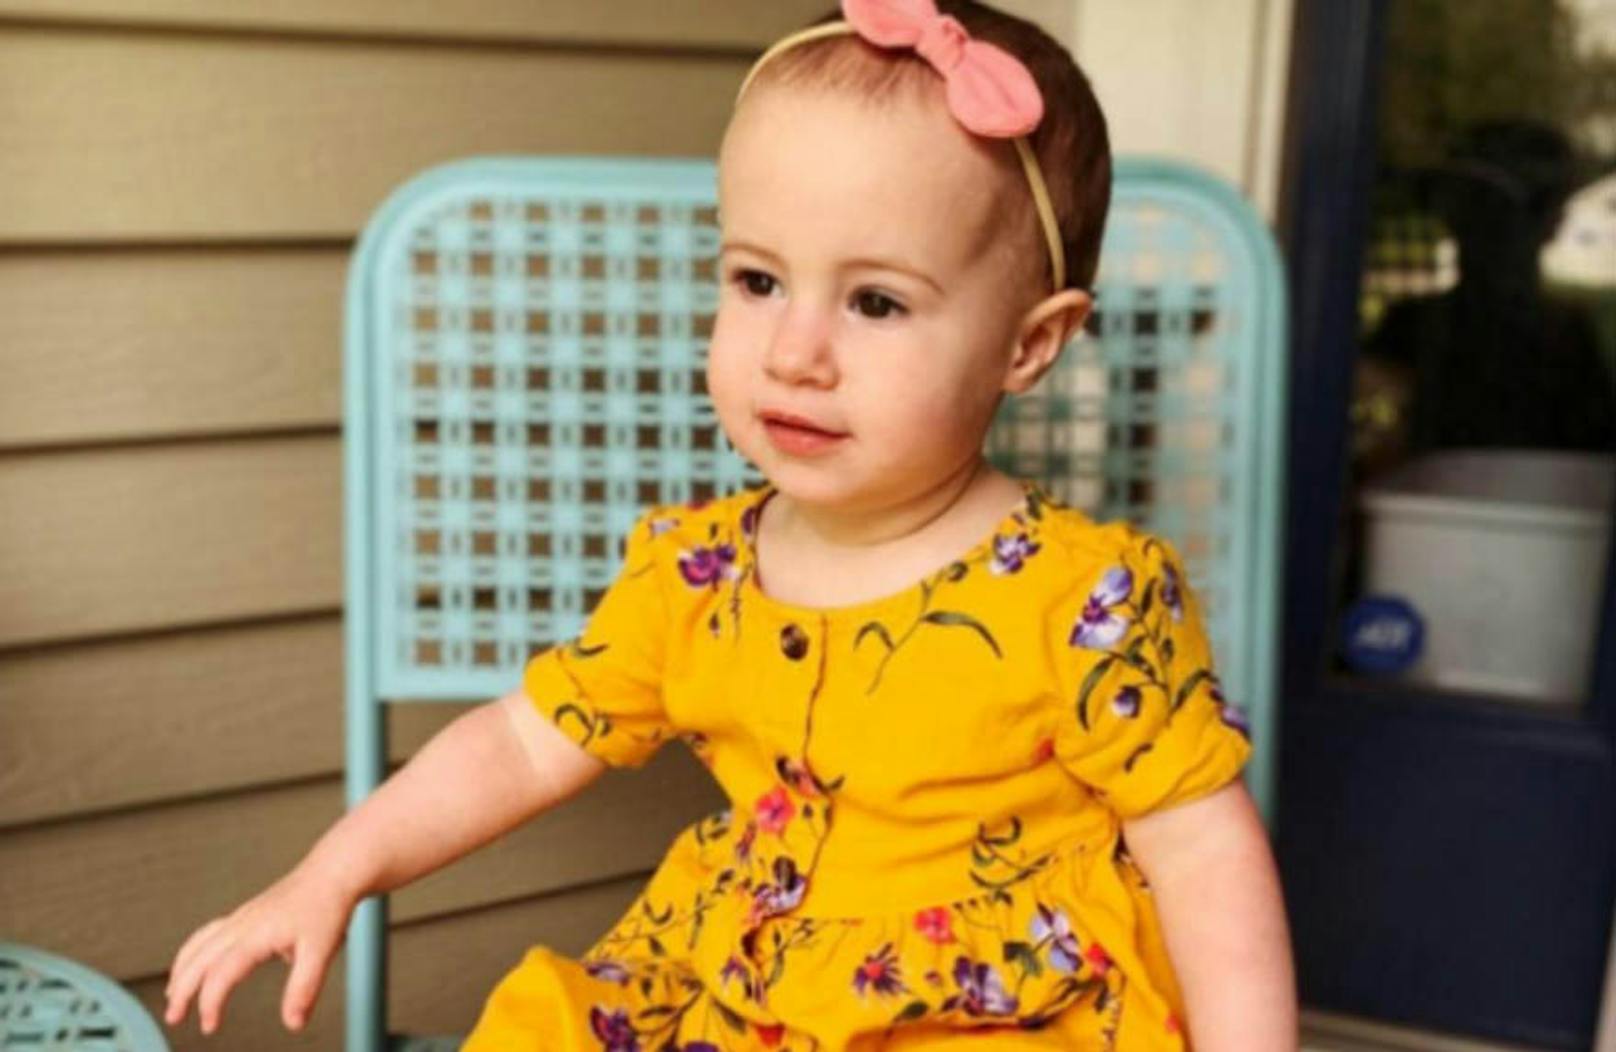 Die 18 Monate alte Chloe Wiegand stürzte am 7. Juli 2019 aus dem elften Stock des Kreuzfahrtschiffes Freedom of the Seas in die Tiefe.